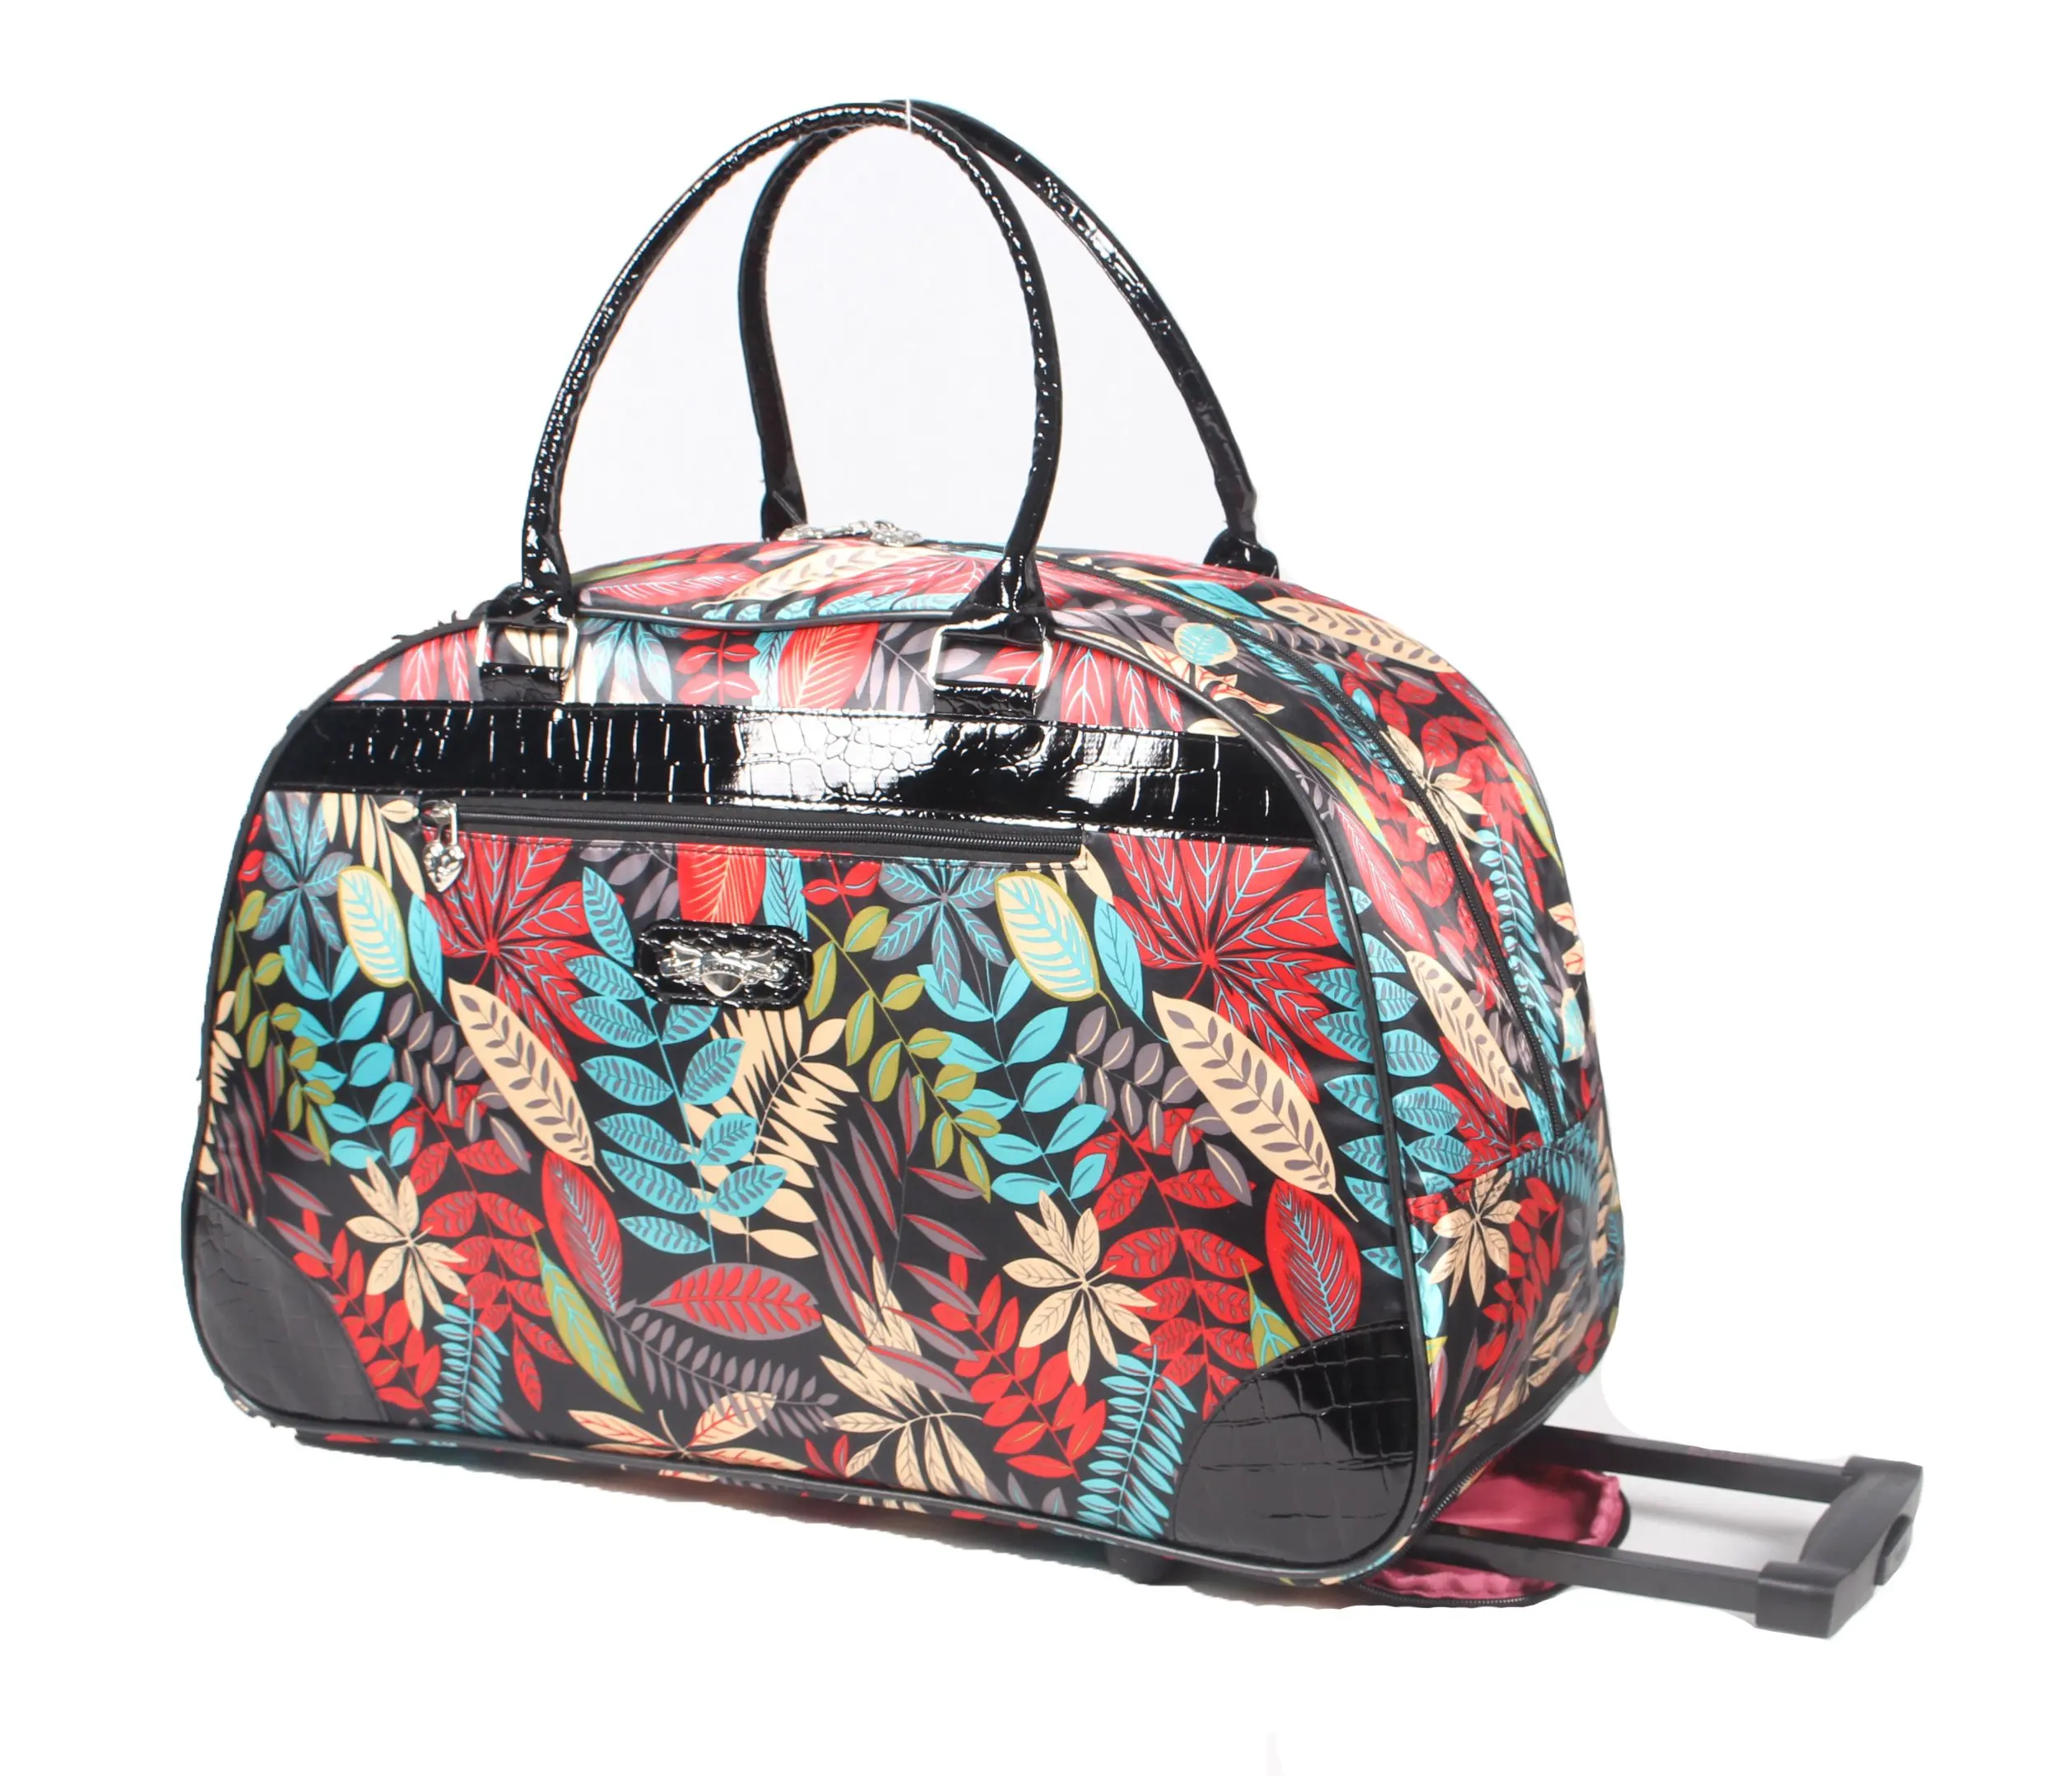 Buy Kathy Van Zeeland Luggage Womens 22 Inch Suitcase Printed Rolling ...